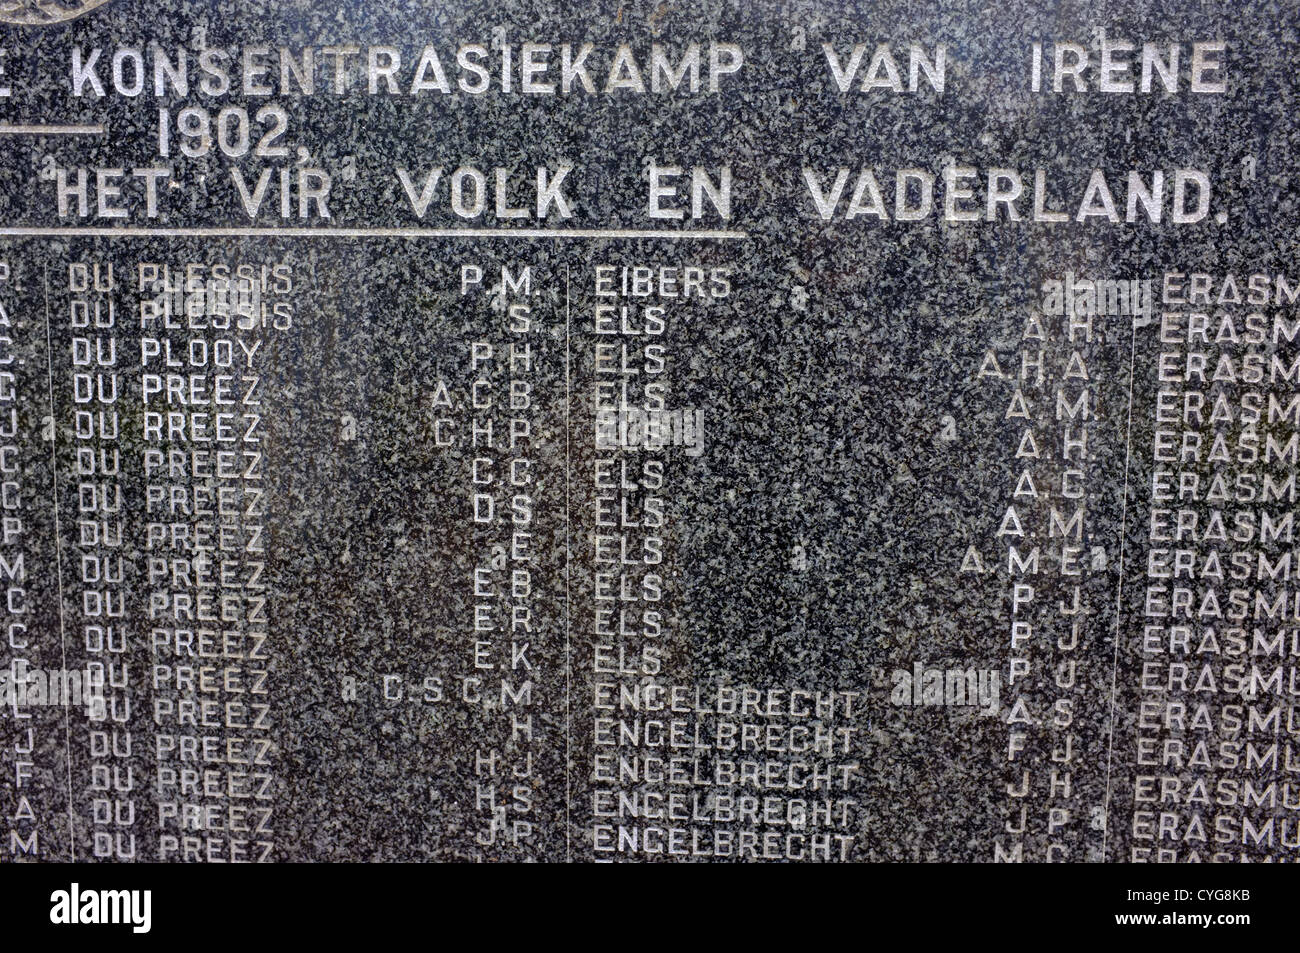 Nombres enumerados en afrikaans de Irene memorial del campo de concentración en Sudáfrica. Foto de stock